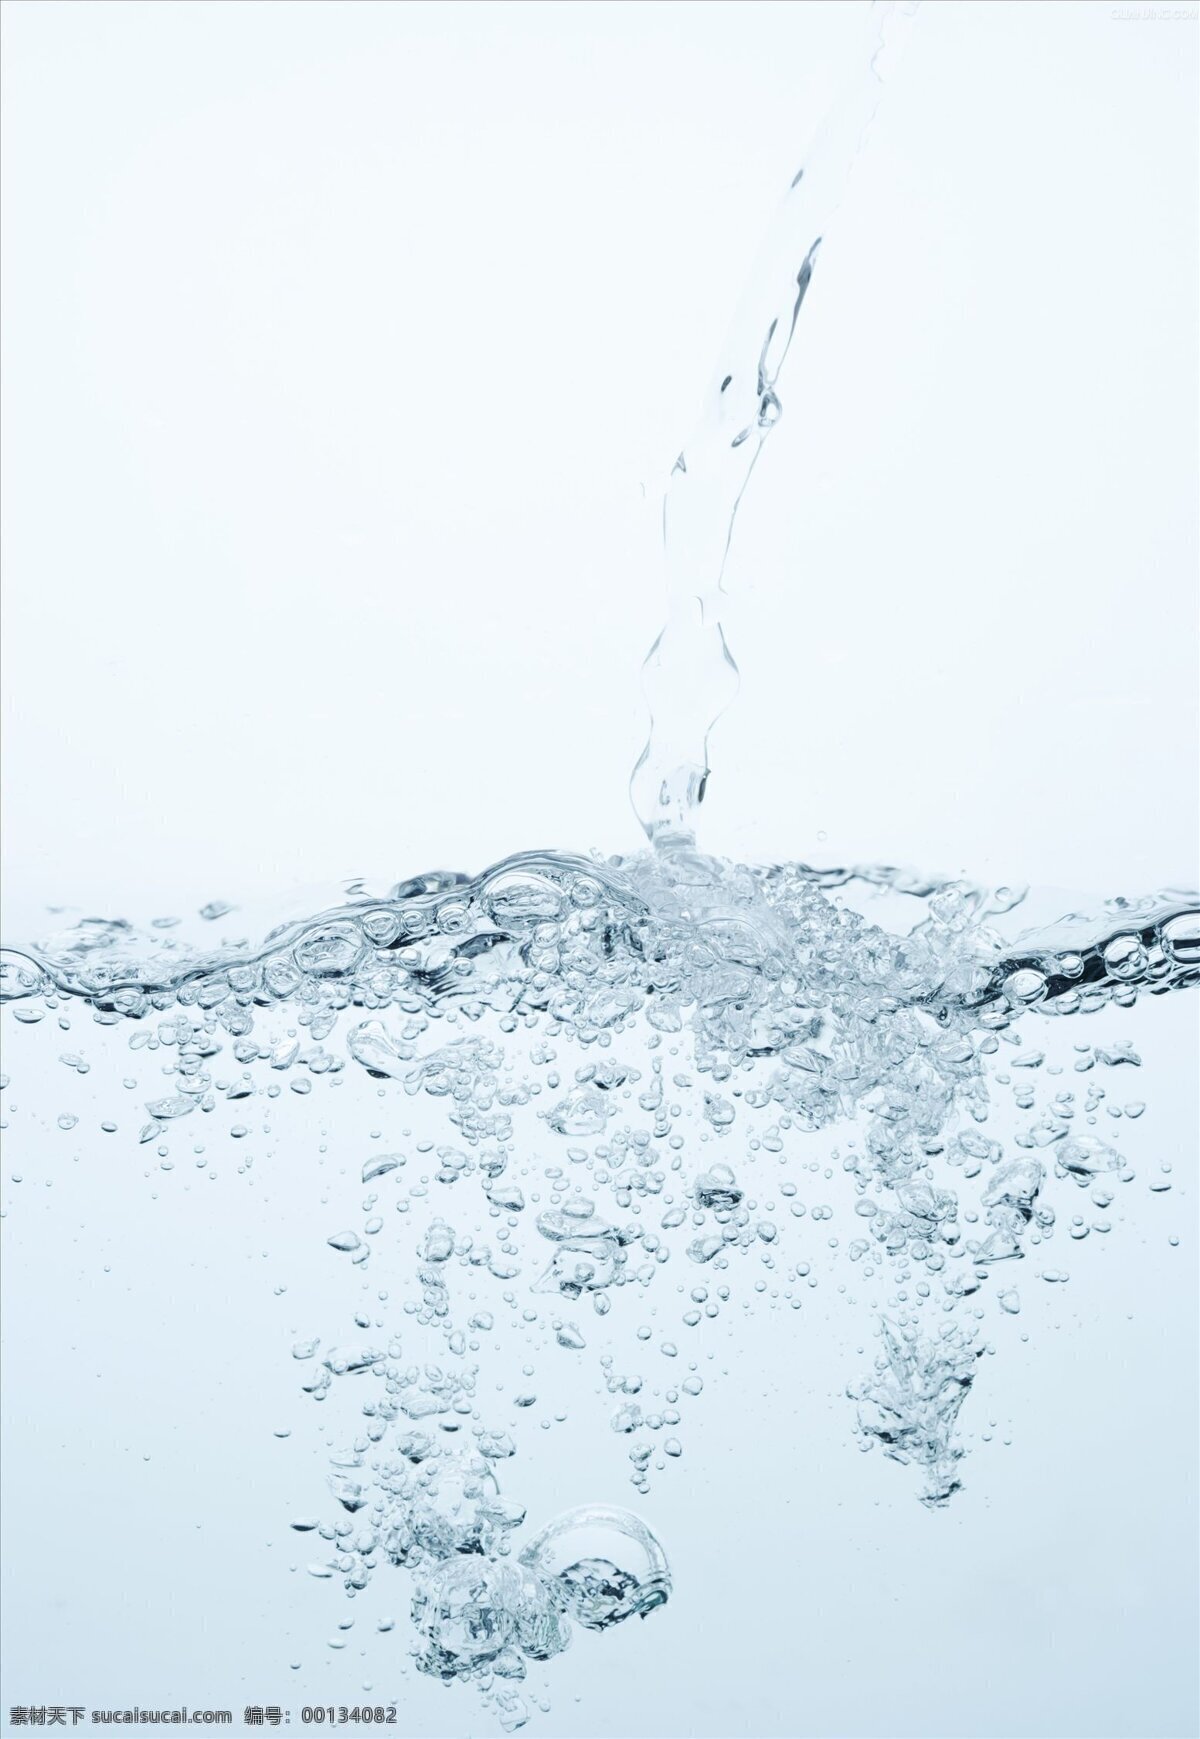 水花溅起 水珠 水面 水 水素材 气泡 动态水 水滴 水气泡 水泡 水花 生活百科 生活素材